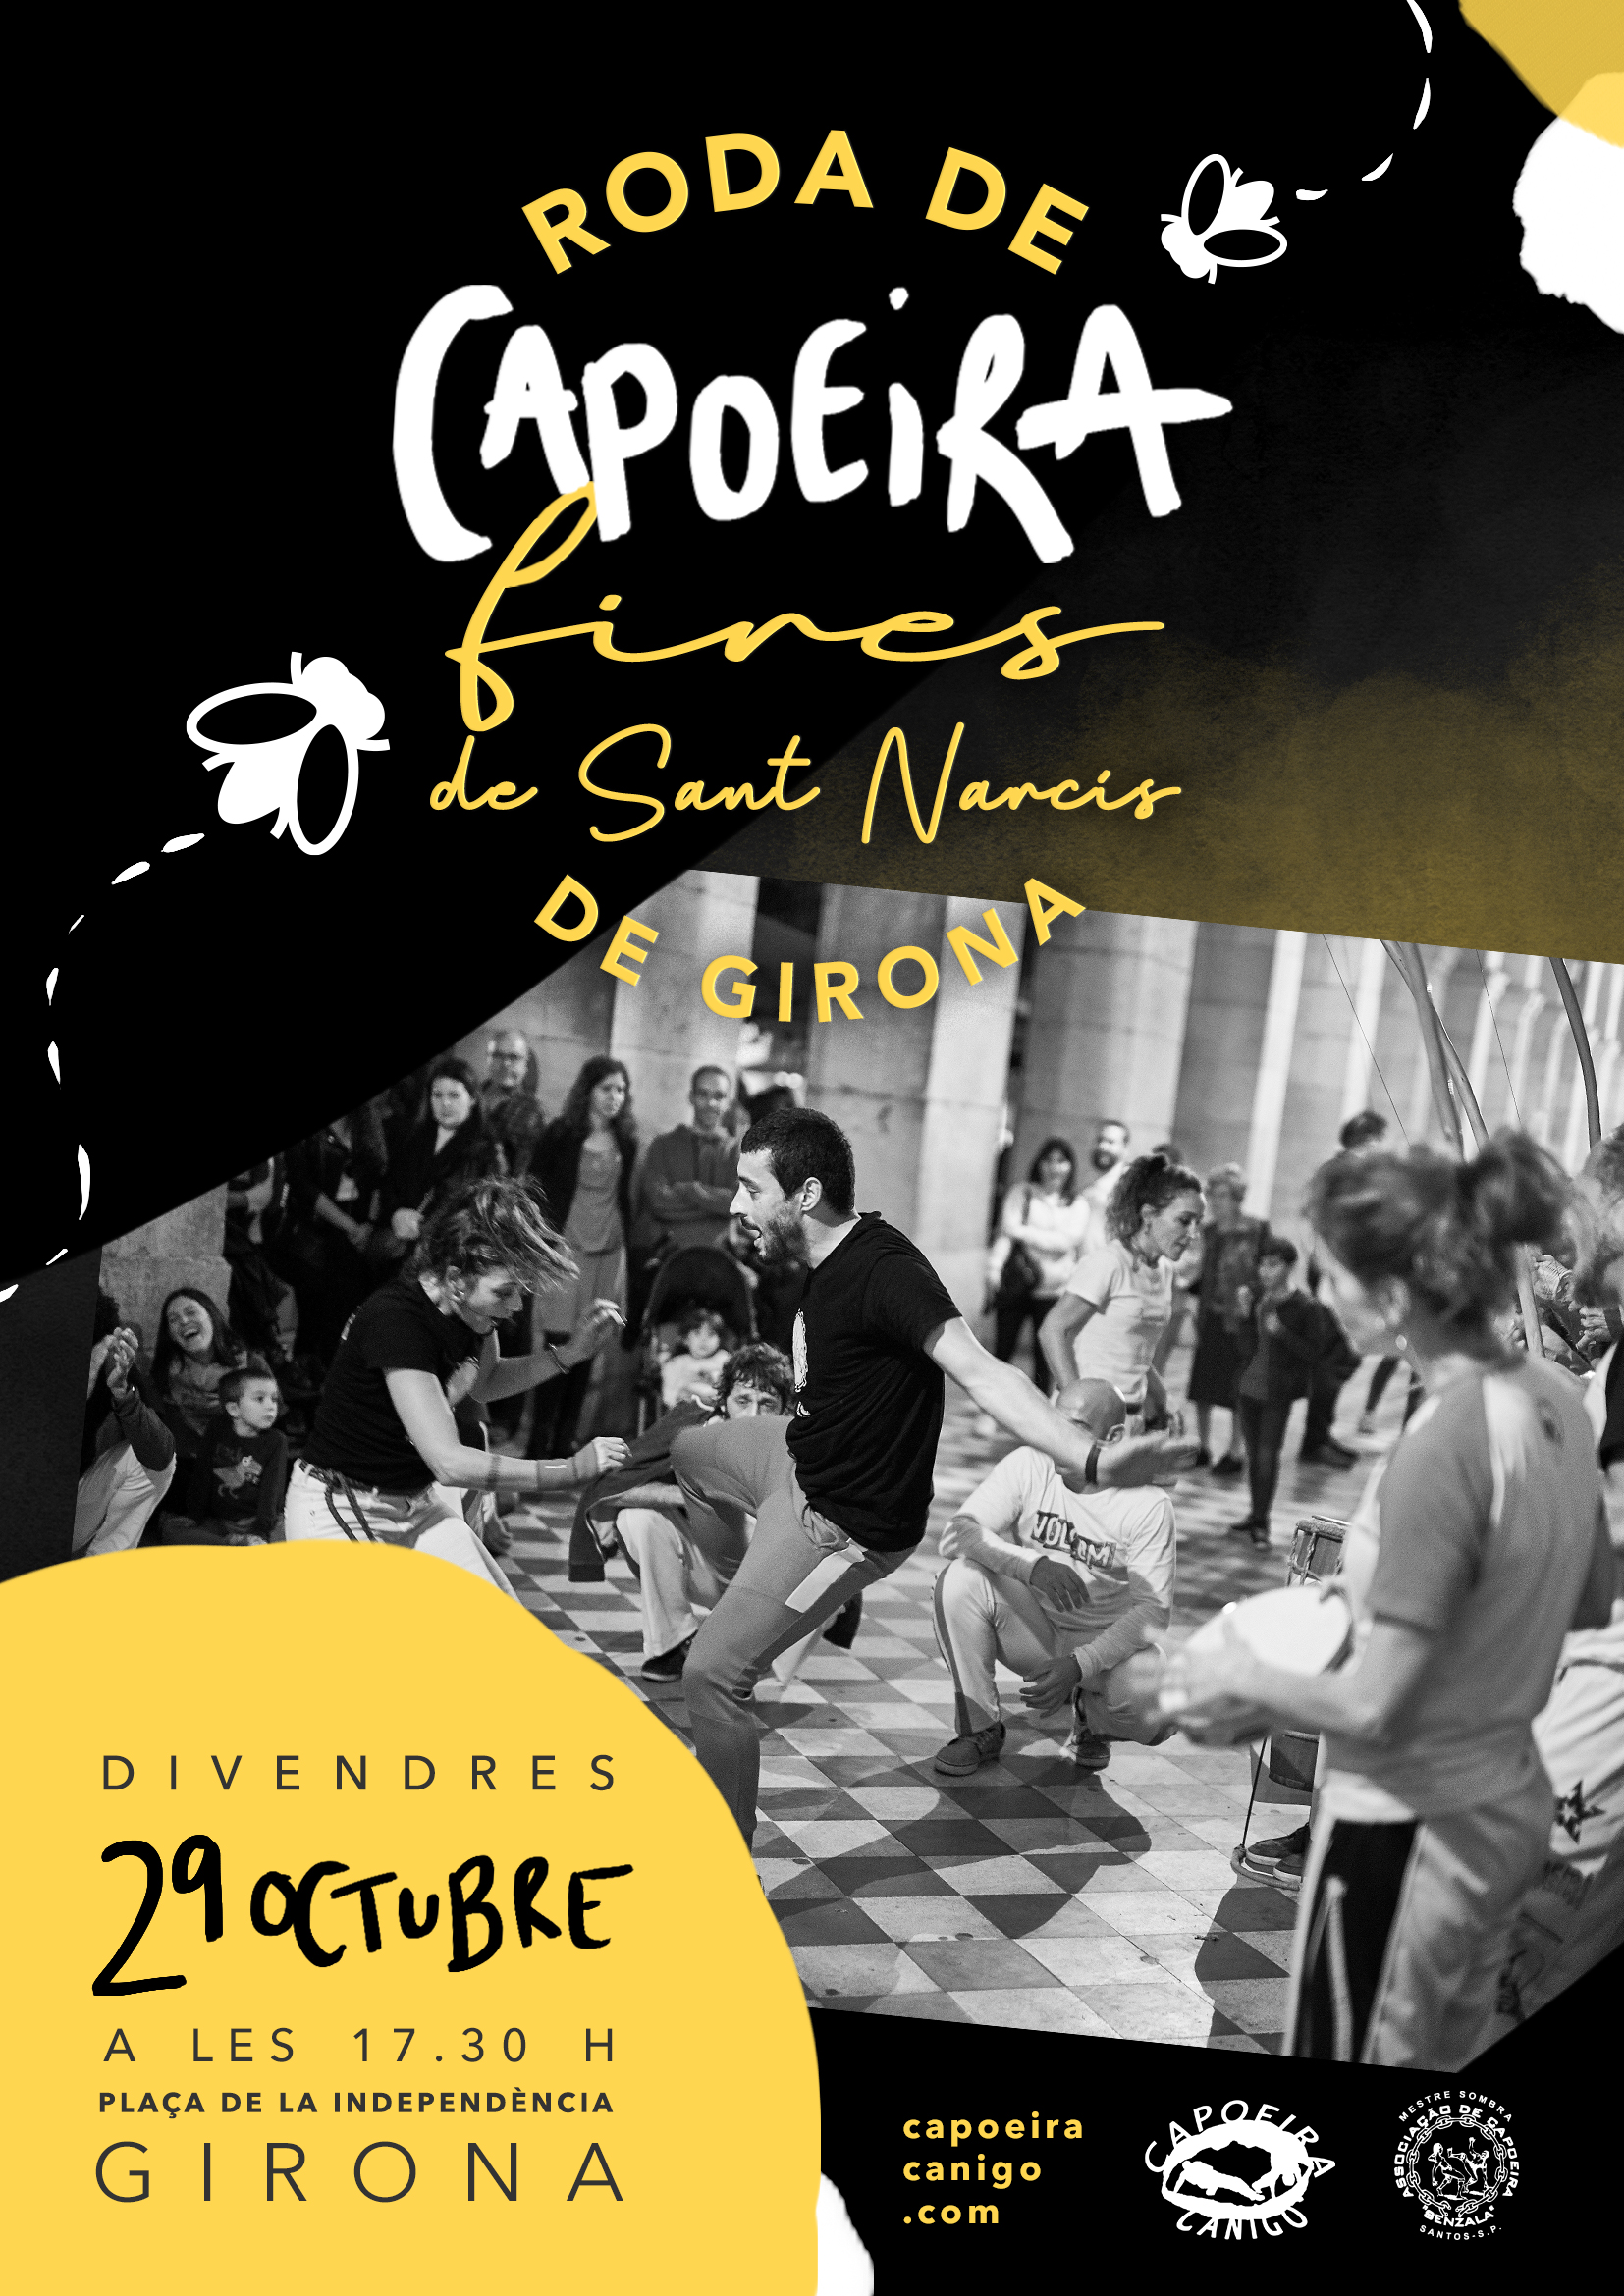 Roda de capoeira FIRES DE SANT NARCÍS Girona